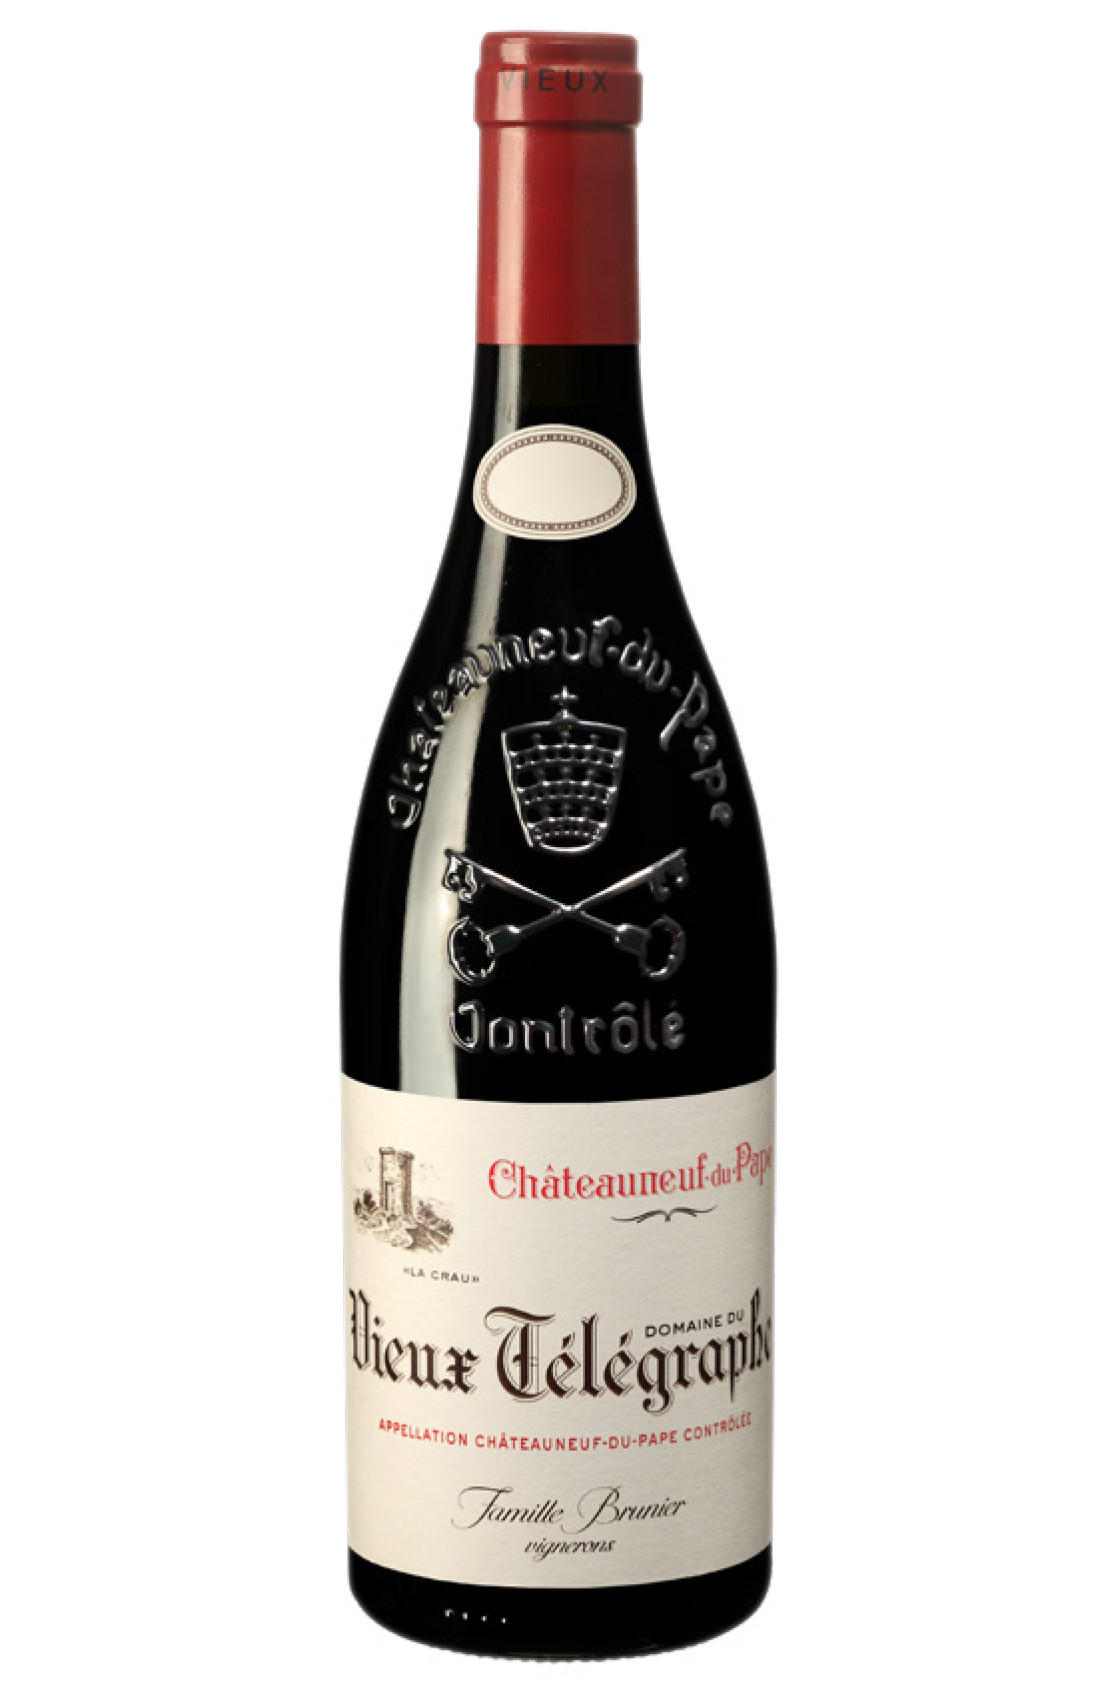 Domaine Bros. Wine du Télégraphe, La Buy Rouge, - 2019 Châteauneuf-du-Pape Berry Crau, Rudd & Rhône Vieux